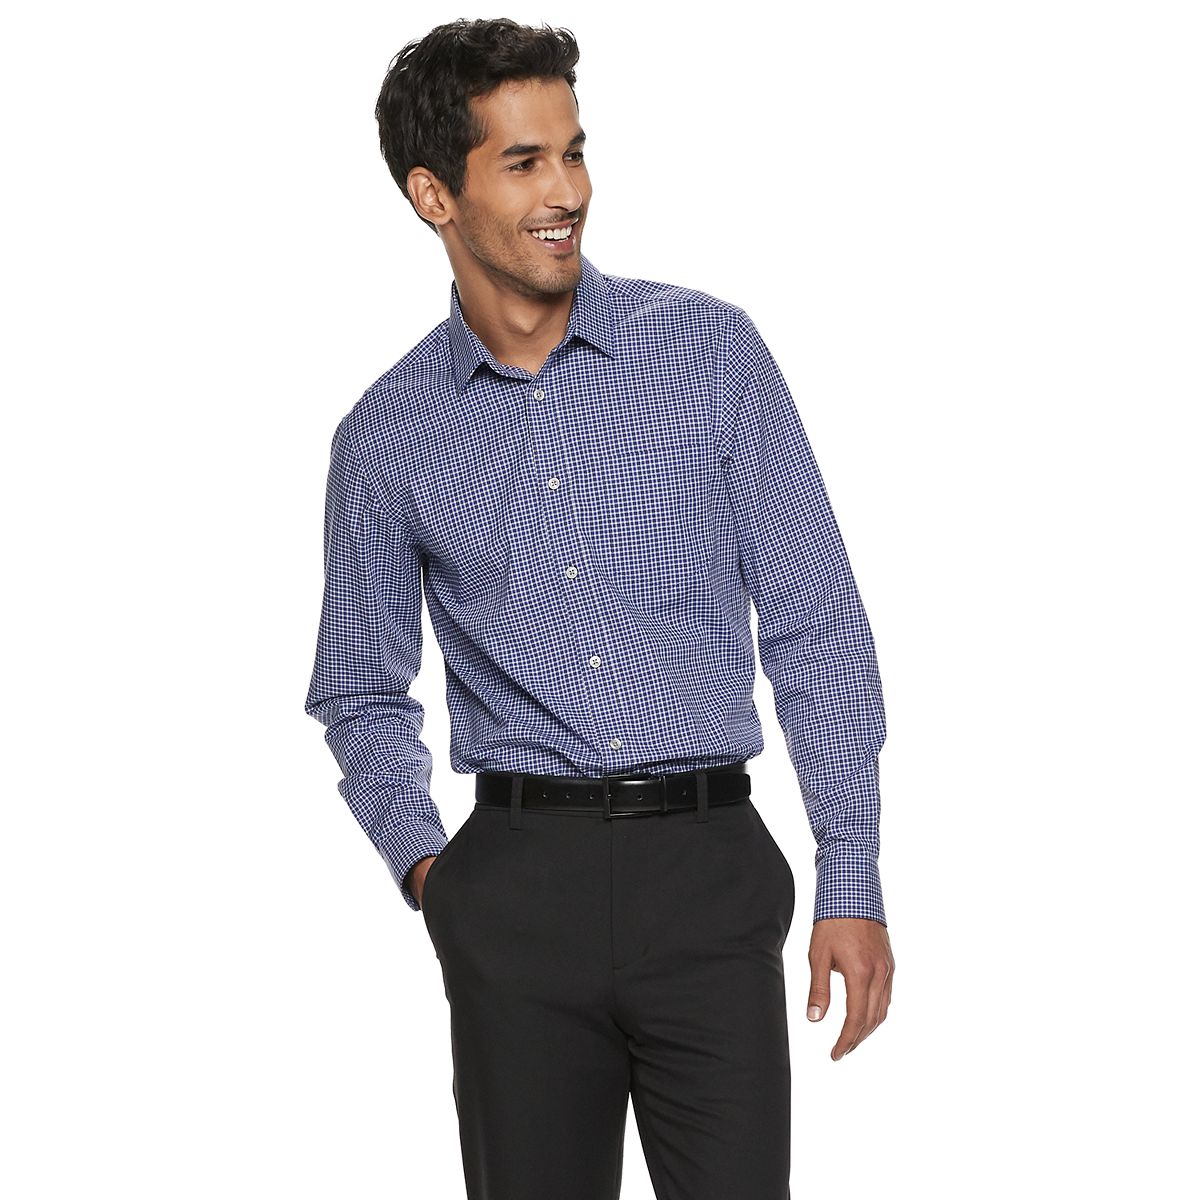 majority Berri Objector Men's Slim Fit Dress Shirts: Add On-Trend Appeal to Your Formal Wardrobe |  Kohl's